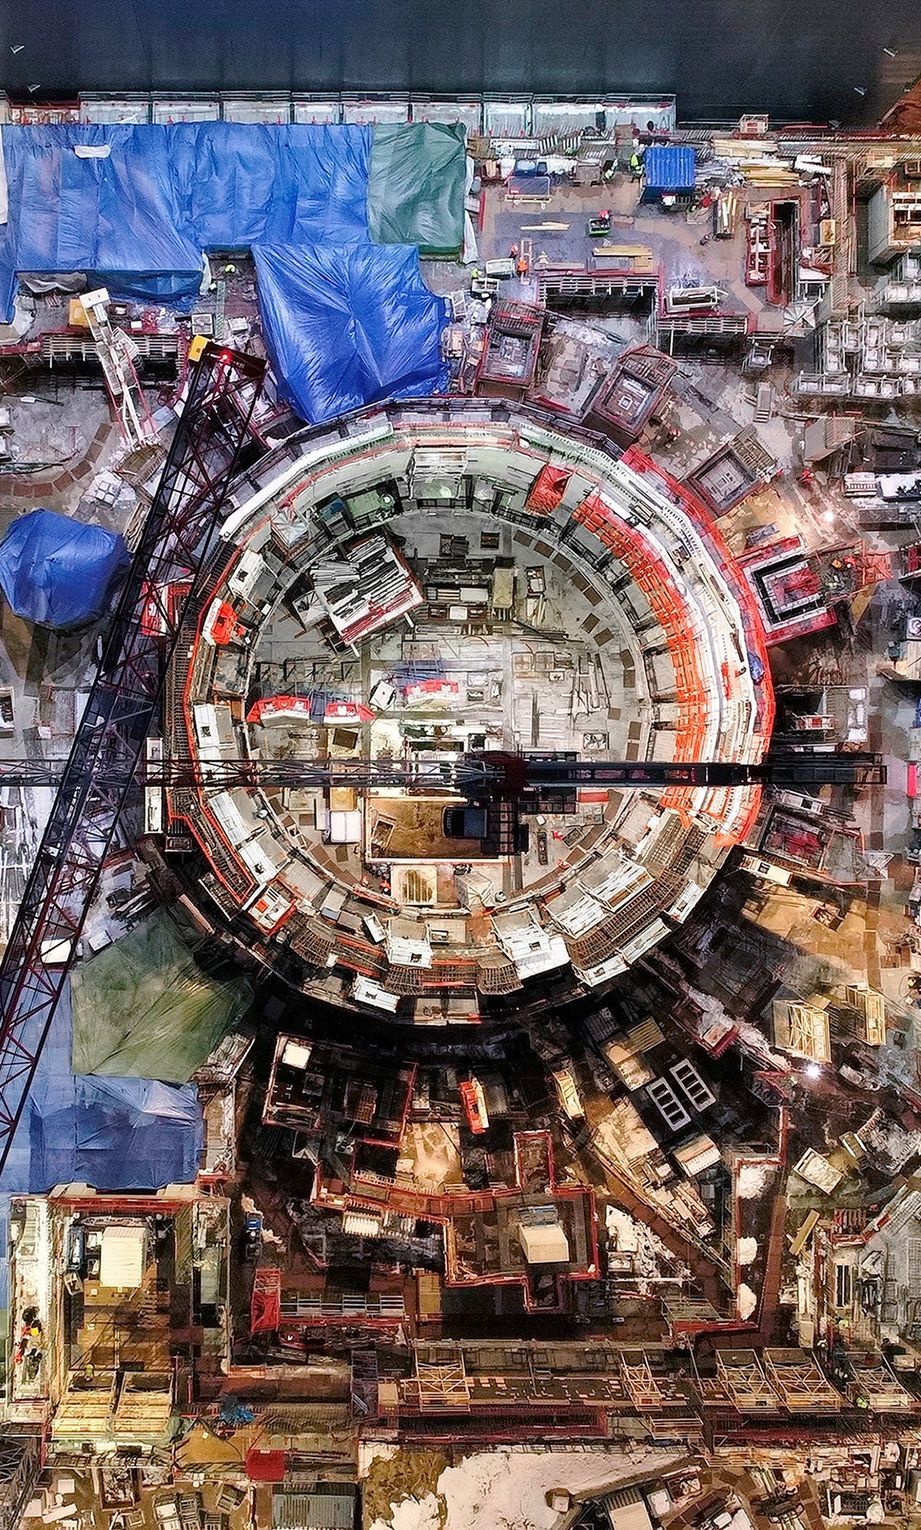 NIEUWE ENERGIE In ZuidFrankrijk wordt door 35 landen gebouwd aan ITER een experimentele kernfusiereactor waarin wordt geprobeerd om energie te winnen door kernfusie  het proces dat de sterren aandrijft en in potentie een onuitputtelijke bron van duurzame energie vormt